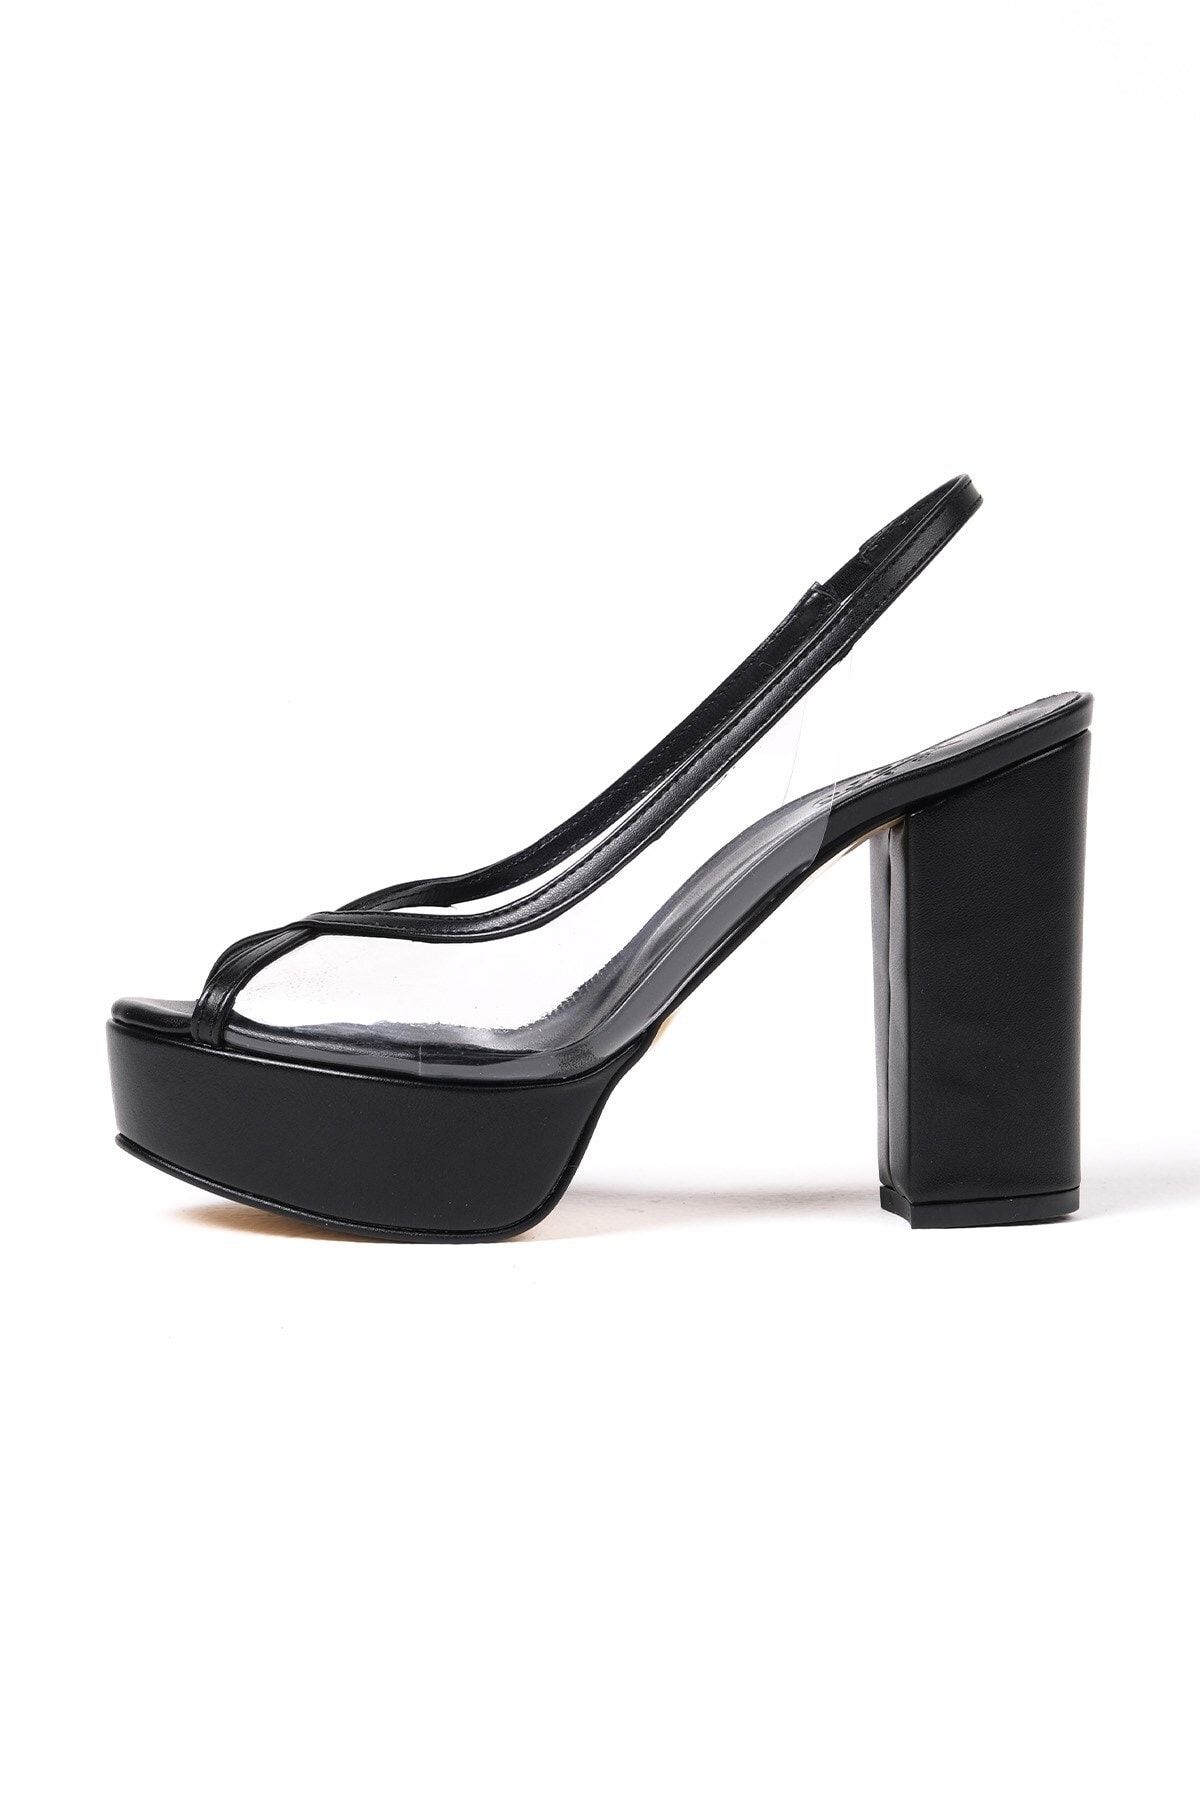 Mio Gusto Nichole Siyah Renk Platformlu Şeffaf Kadın Abiye Topuklu Ayakkabı